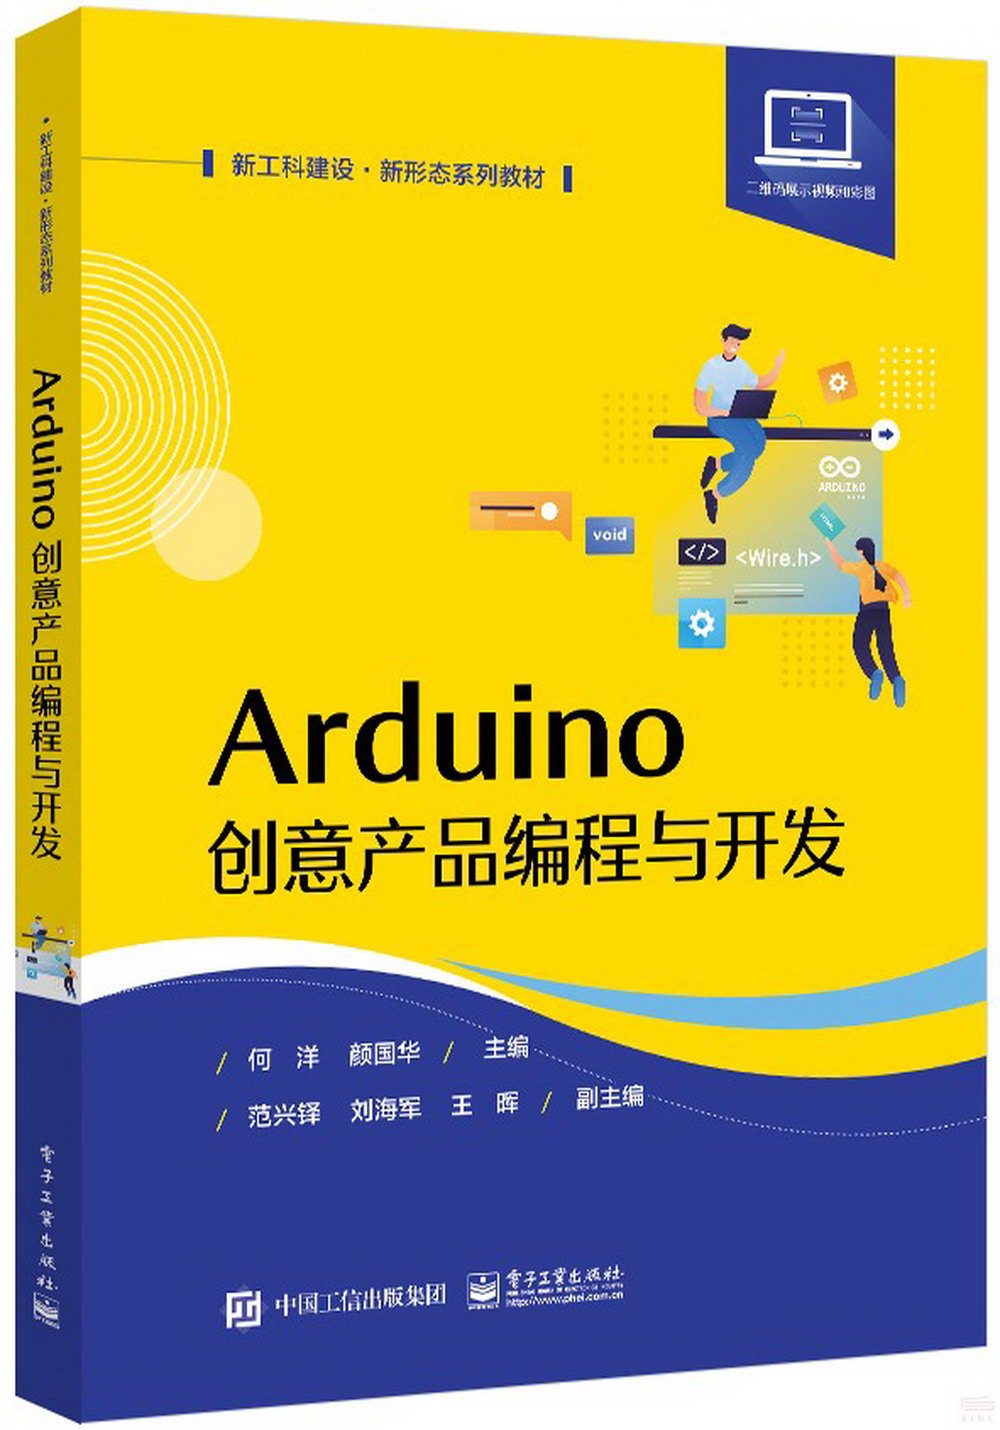 Arduino創意產品編程與開發